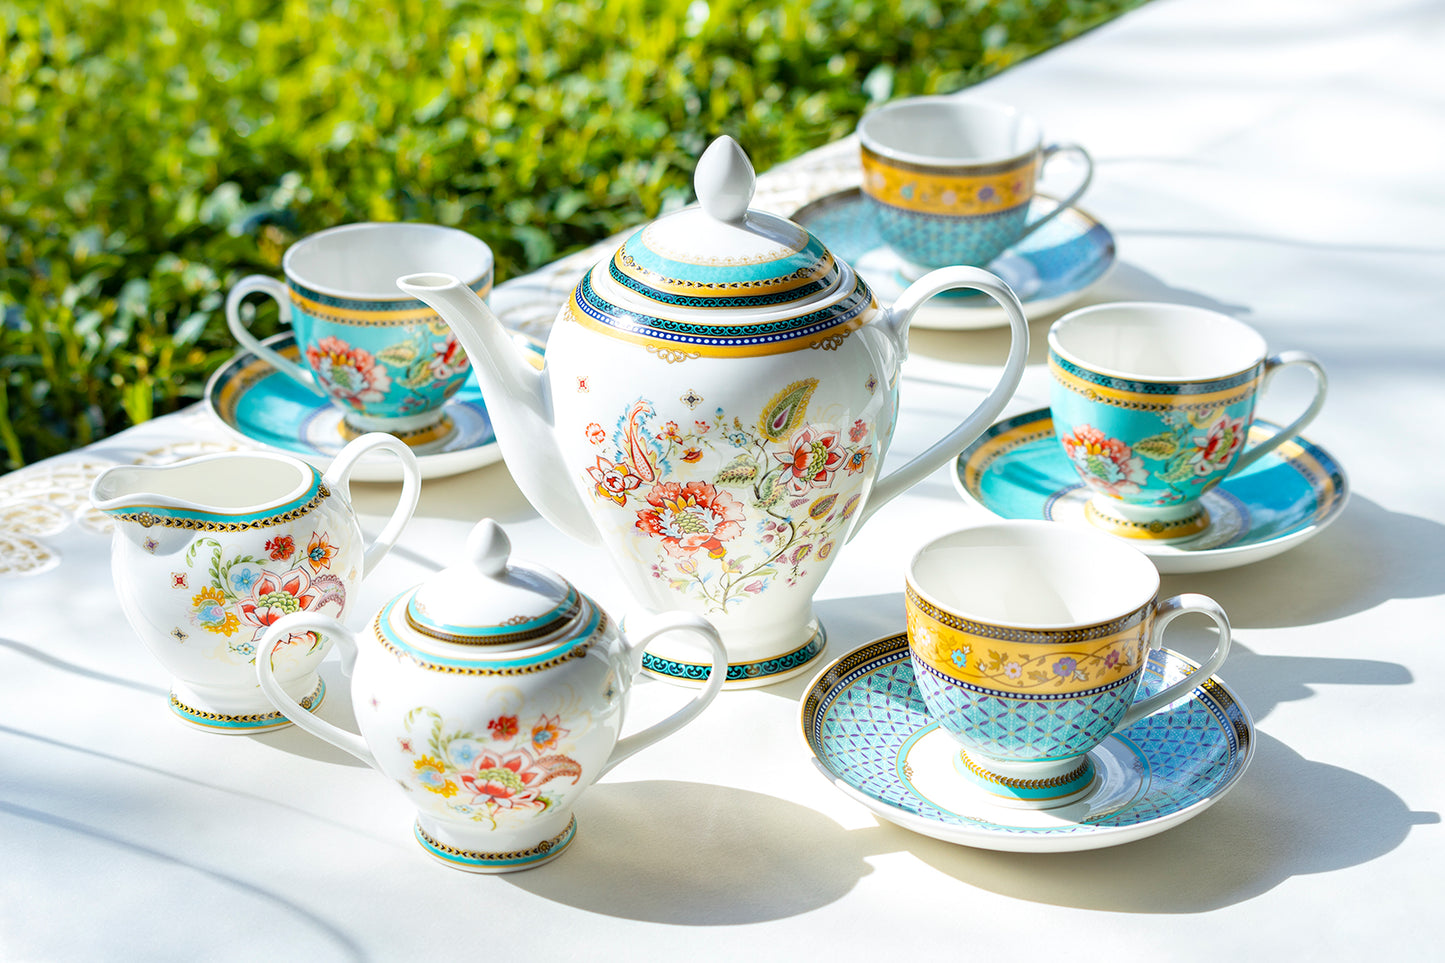 Emperor's Garden Fine Porcelain Dessert / Dinner Plate